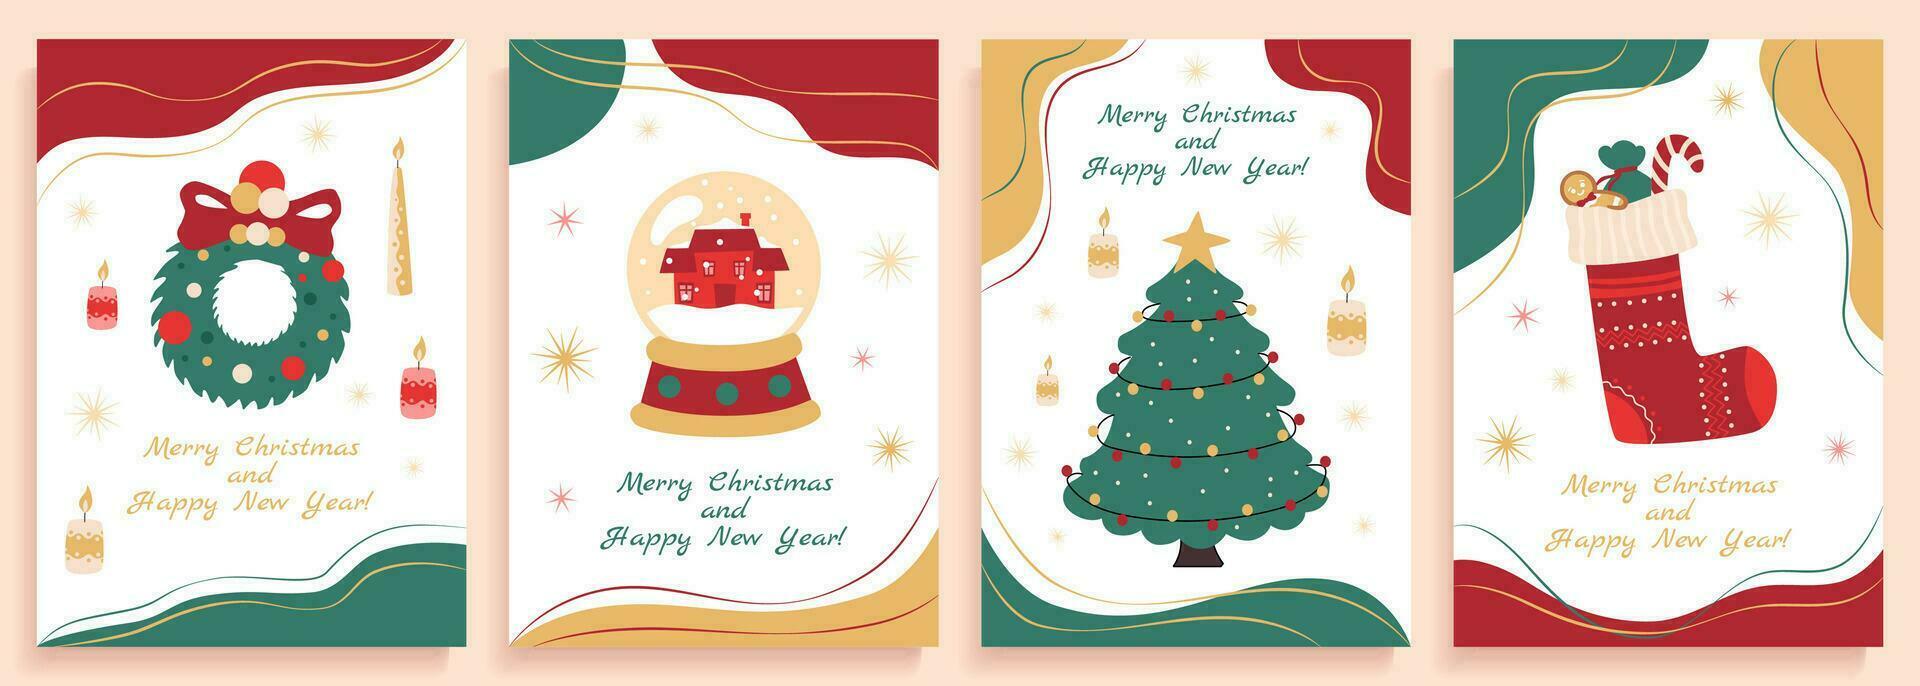 impostato di Natale manifesti con carino piatto disegni di Natale e nuovo anno simboli, abete albero, bicchiere palla con neve, calzino con i regali e ghirlanda. vettore illustrazione.